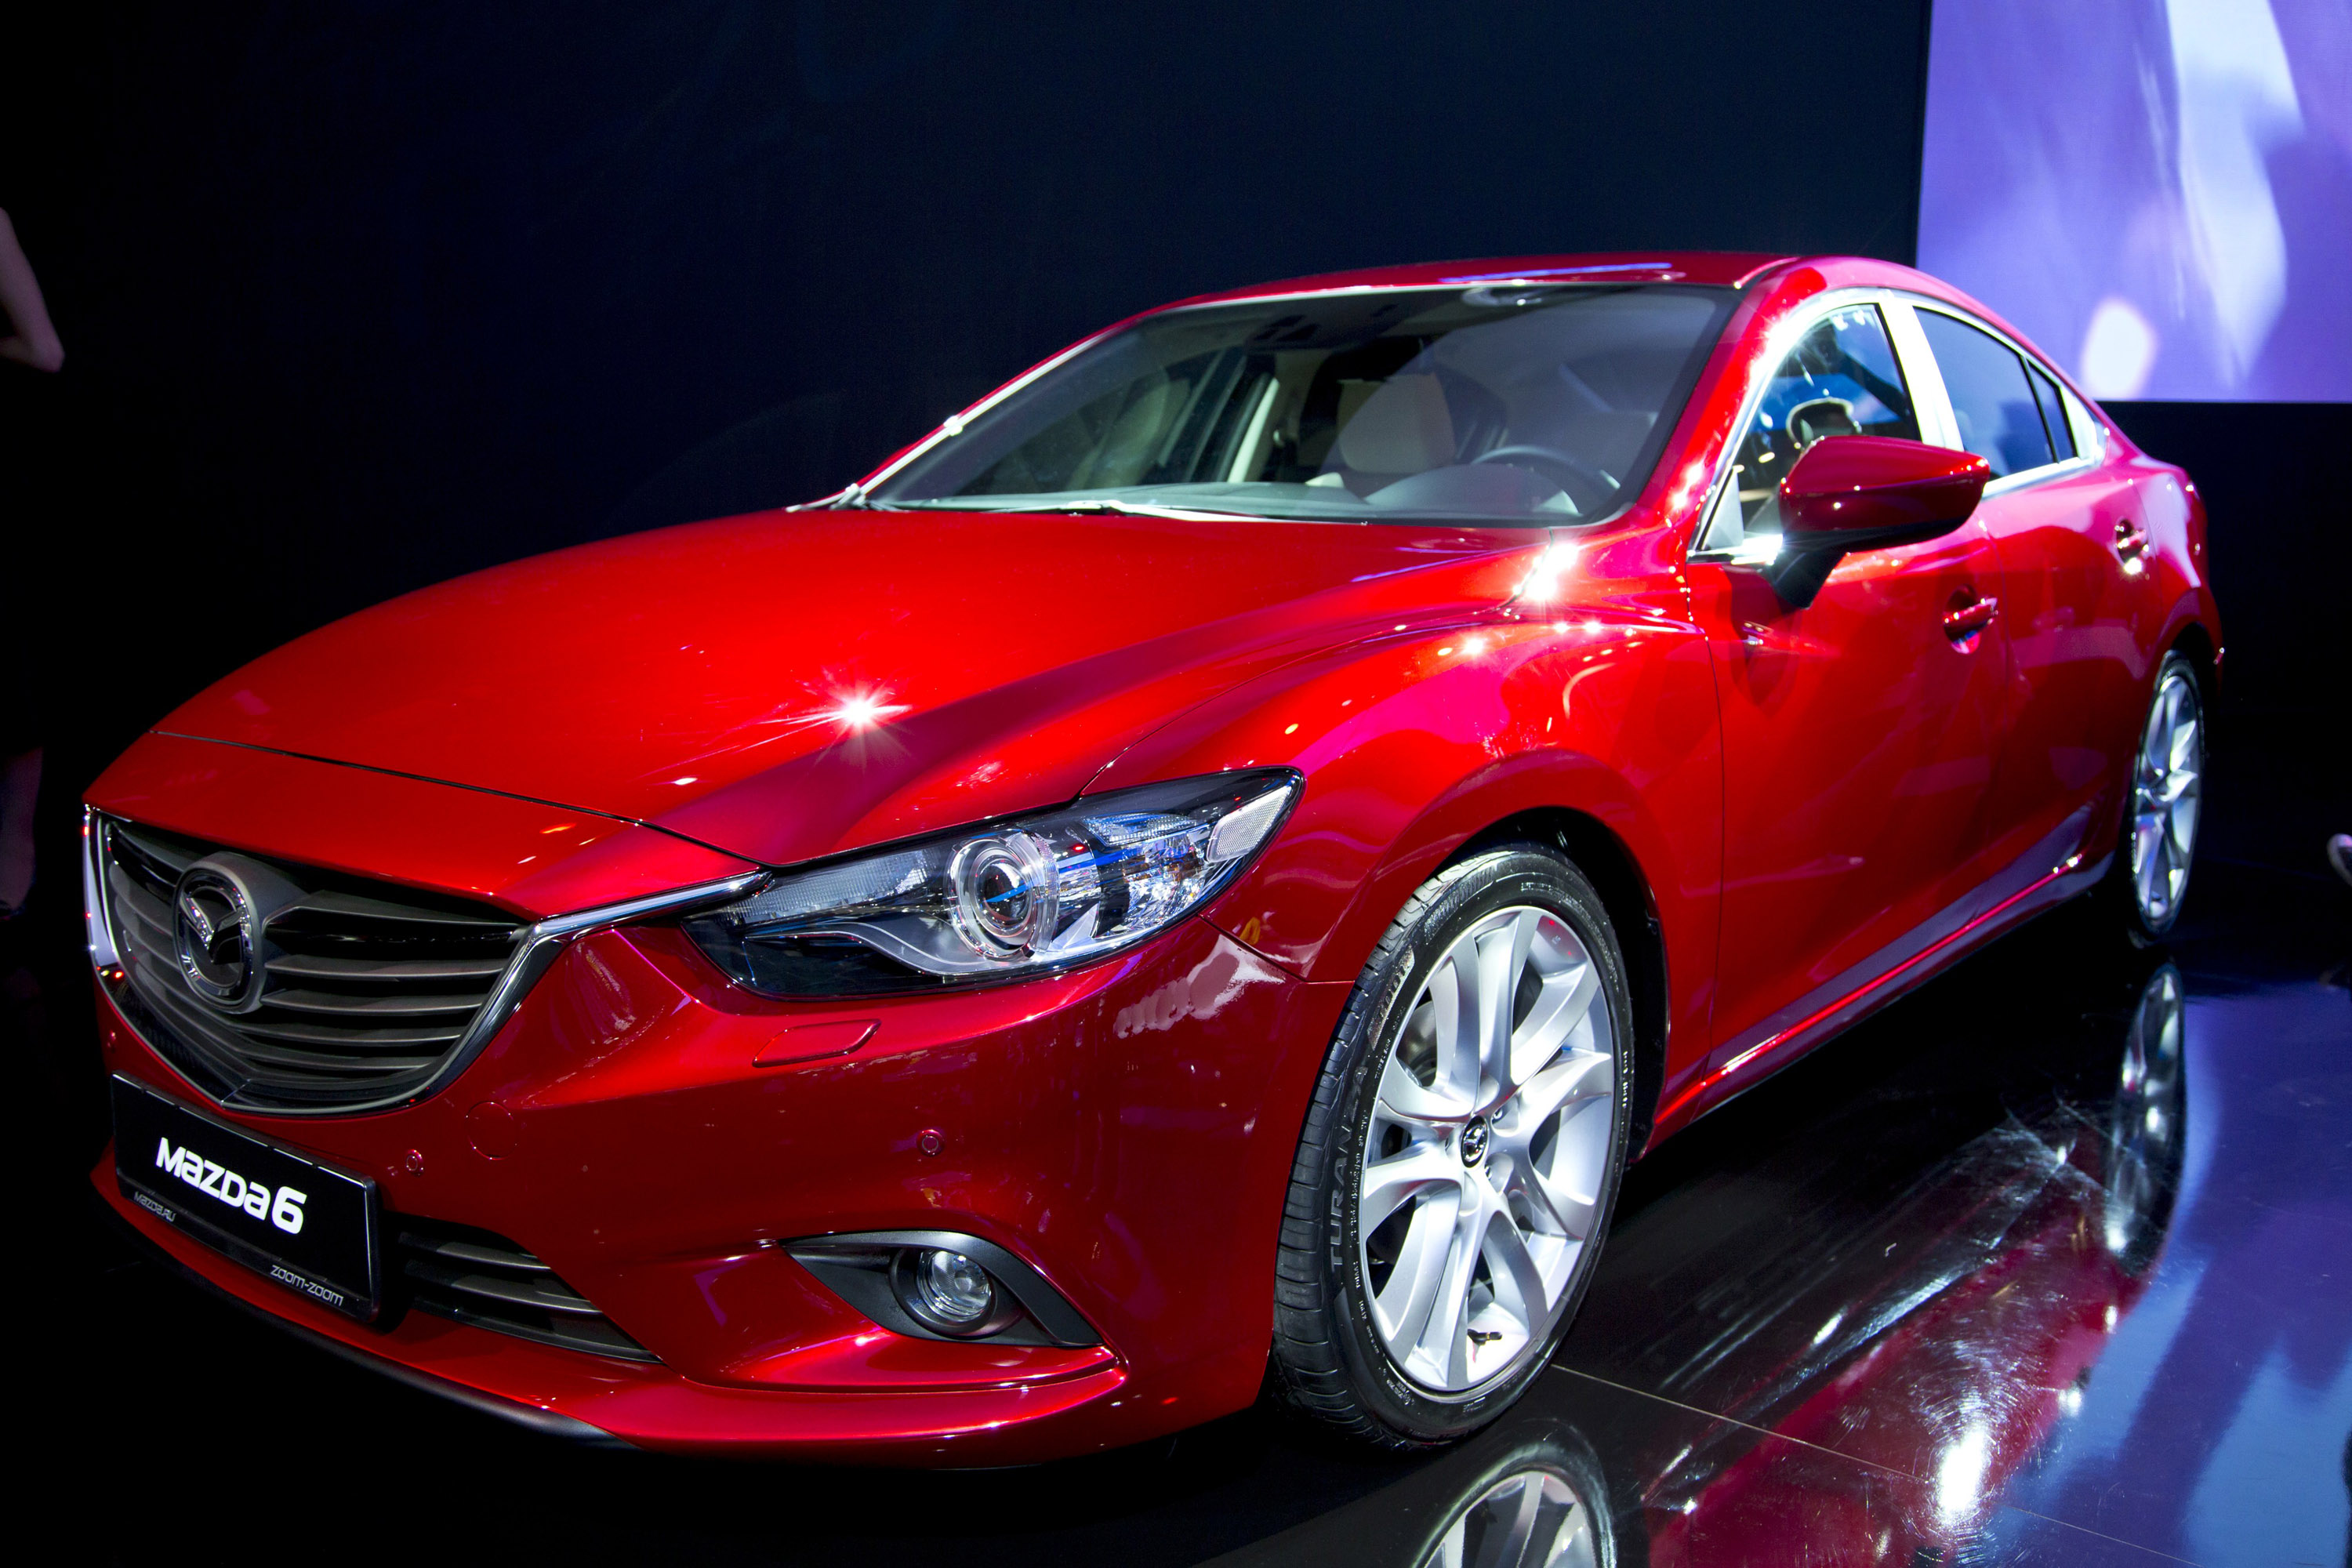 Red mazda. Мазда 6 красная седан. Mazda CX 6. Мазда 6 седан 2014. Мазда 6 2014 красная.